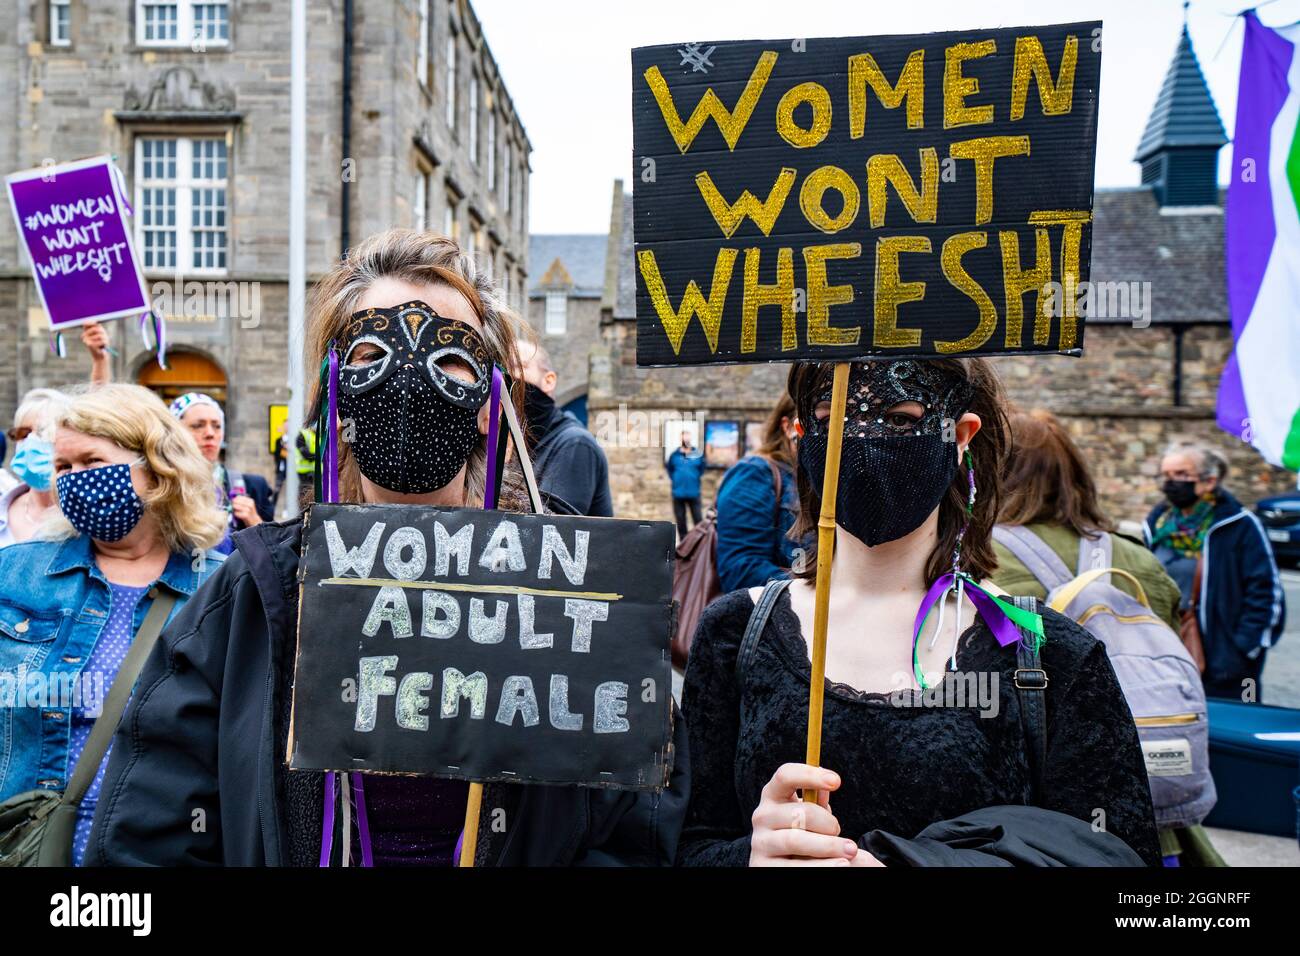 Edinburgh, Schottland, Großbritannien. 2. September 2021. Demonstration zur Unterstützung der Frauenrechte vor dem schottischen Parlament in Holyrood in Edinburgh heute. Die Demonstranten glauben, dass die Definition einer Frau durch das Gesetz der schottischen Regierung bedroht ist, das Transfrauen die gleichen Rechte wie Frauen geben würde. Der Slogan Women Won’t Wheesht wurde angenommen, um ihre Bewegung zu fördern. Eine Gegendemonstration wurde auch von Befürwortern der Rechte von trans people abgehalten. Zwischen beiden Gruppen wurden Beleidigungen ausgetauscht. Iain Masterton/Alamy Live News. Stockfoto